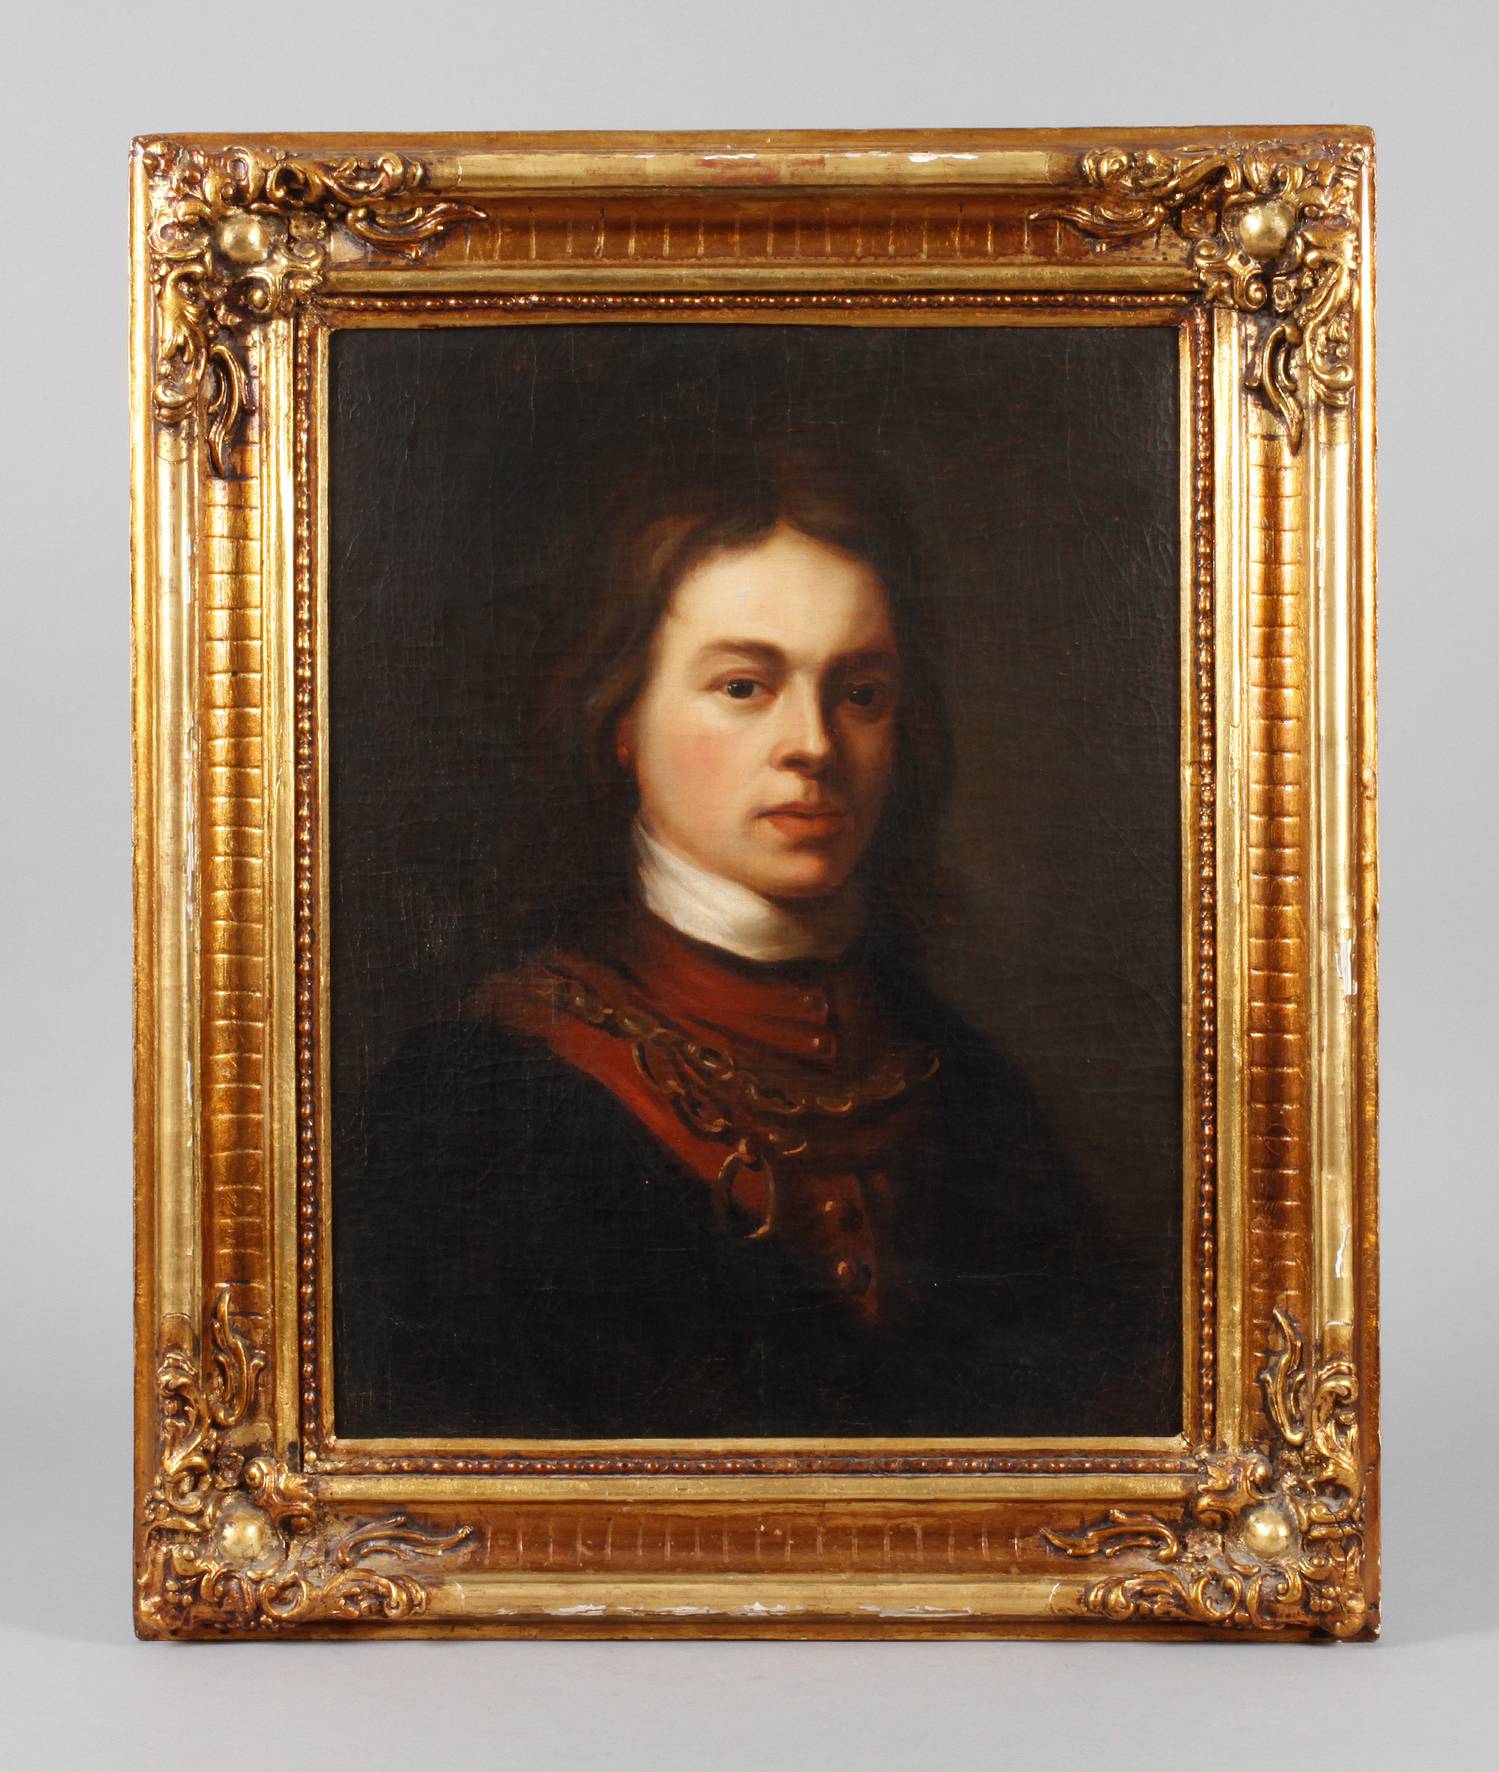 Barockportrait eines jungen Mannes